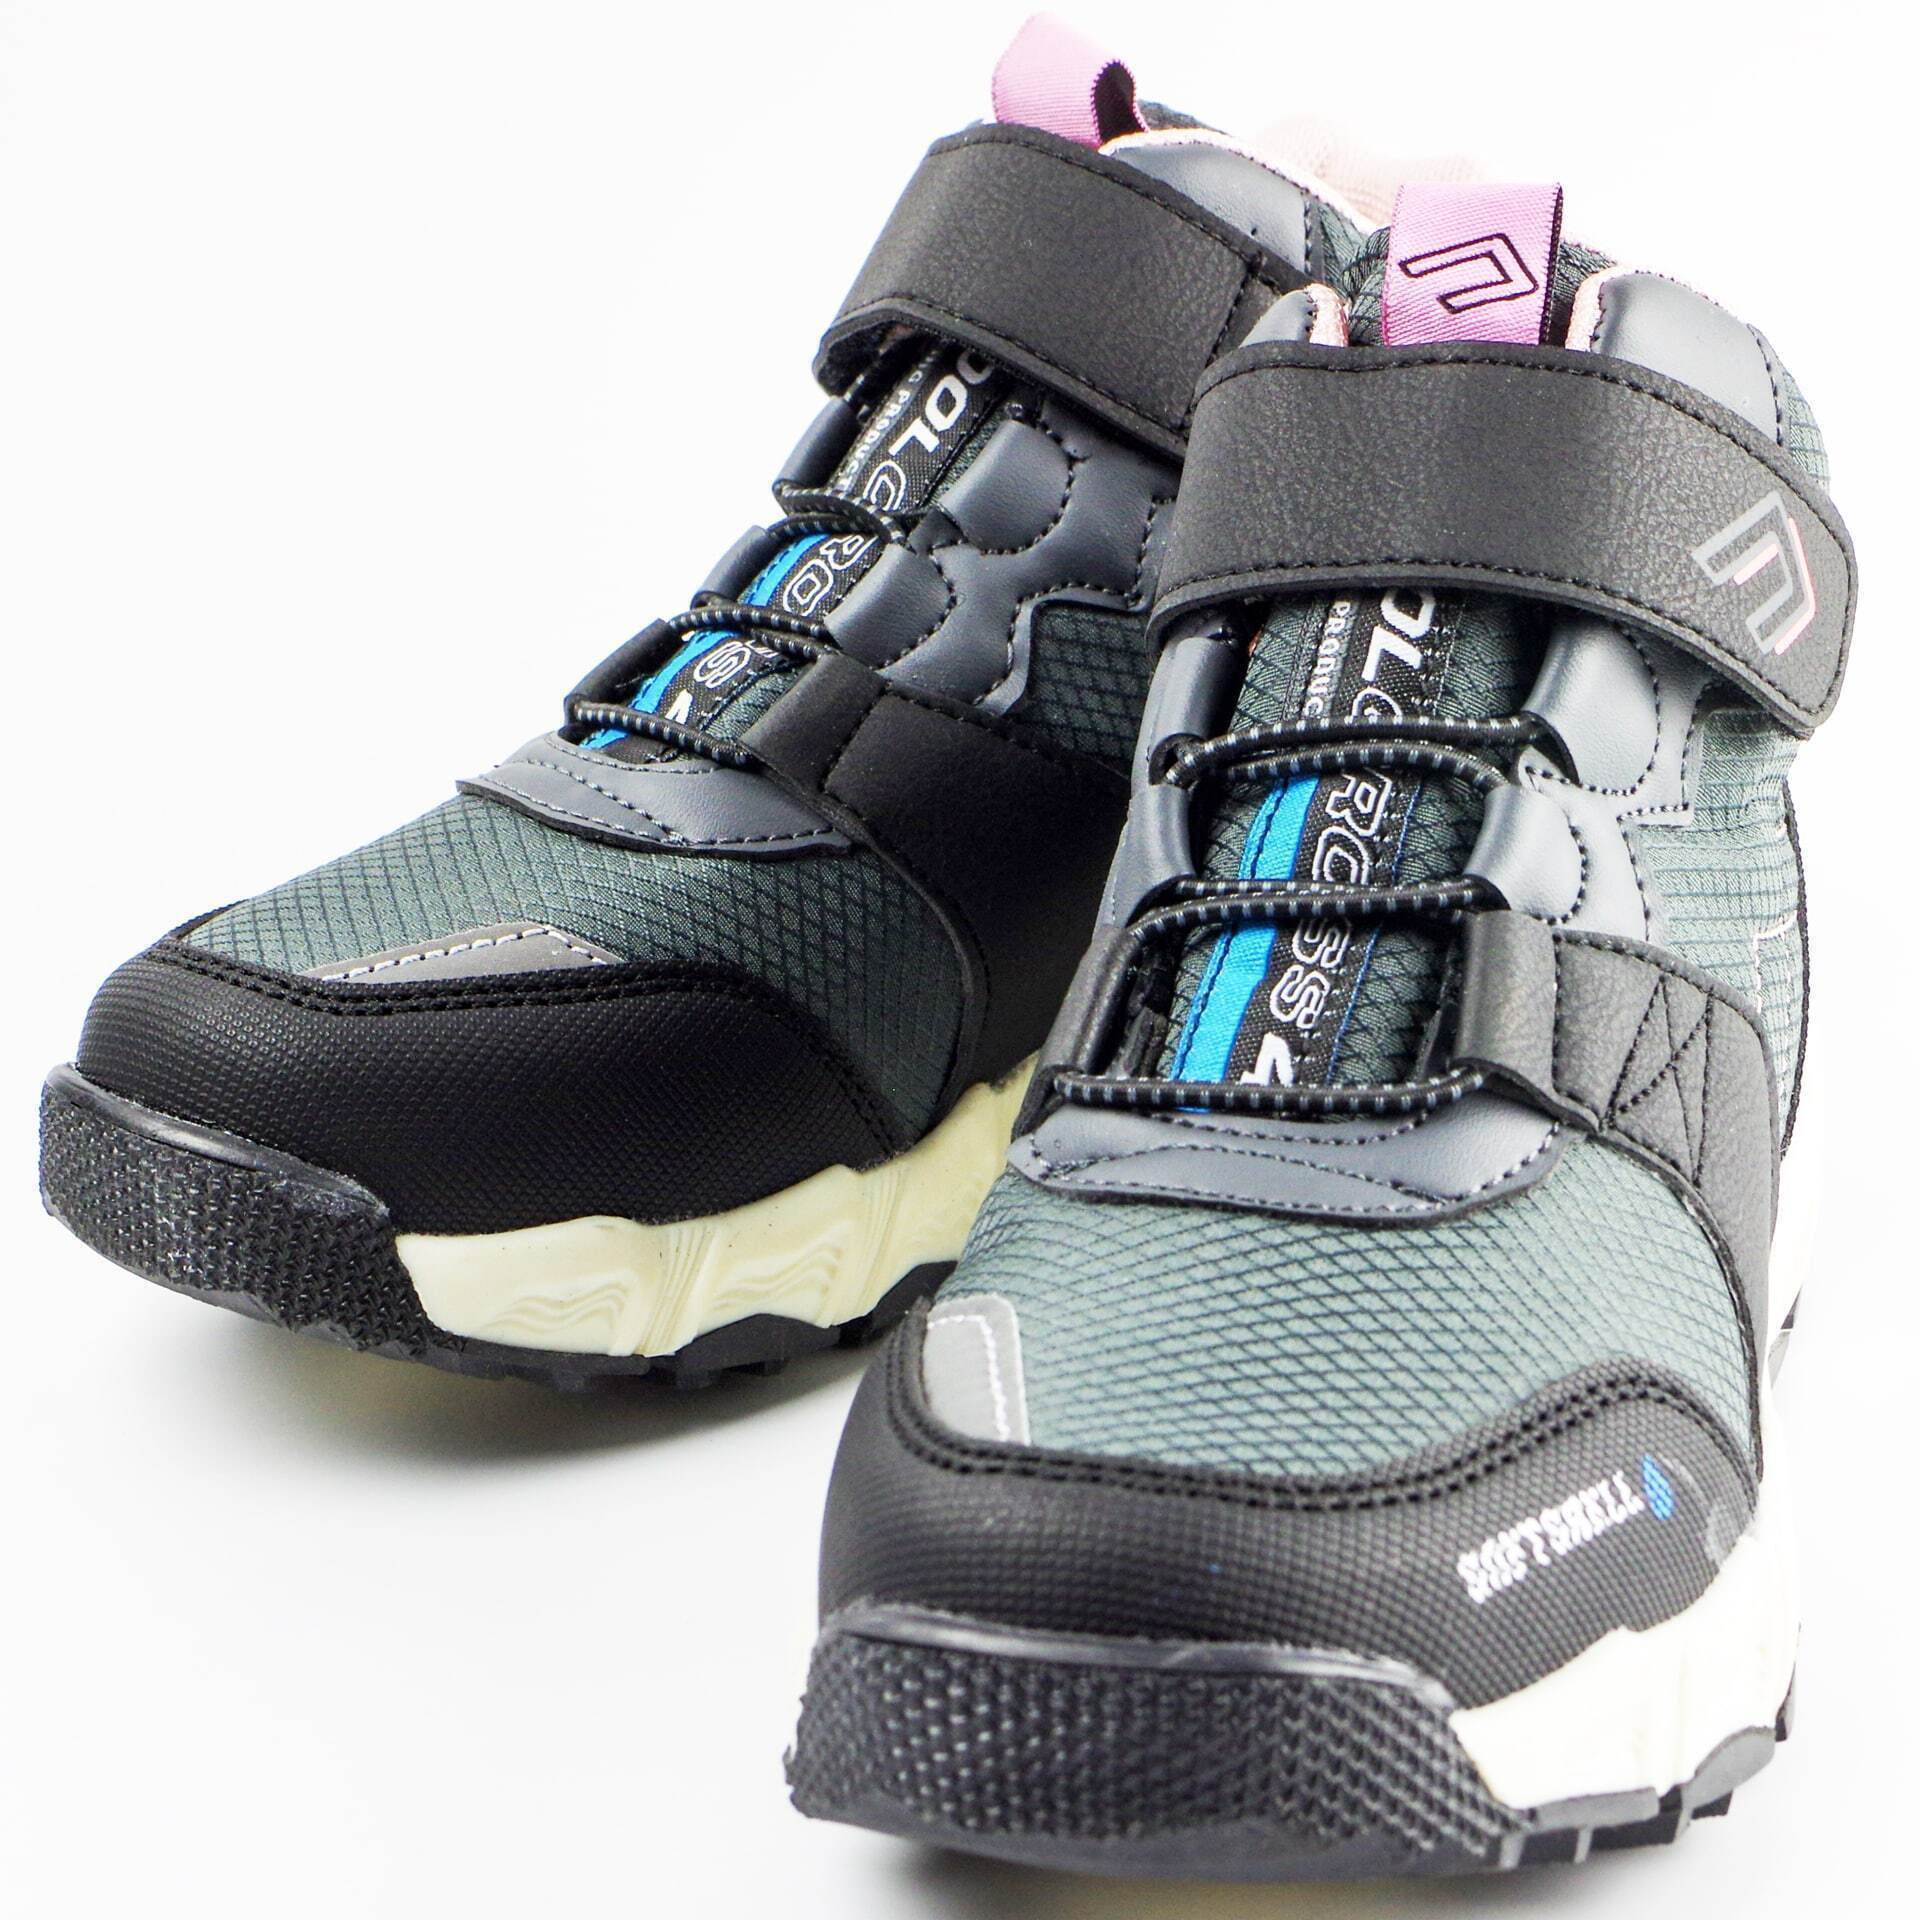 Мембранные ботинки (2161) материал Мембрана, цвет Серый  для девочки 31-35 размеры – Sole Kids. Фото 3